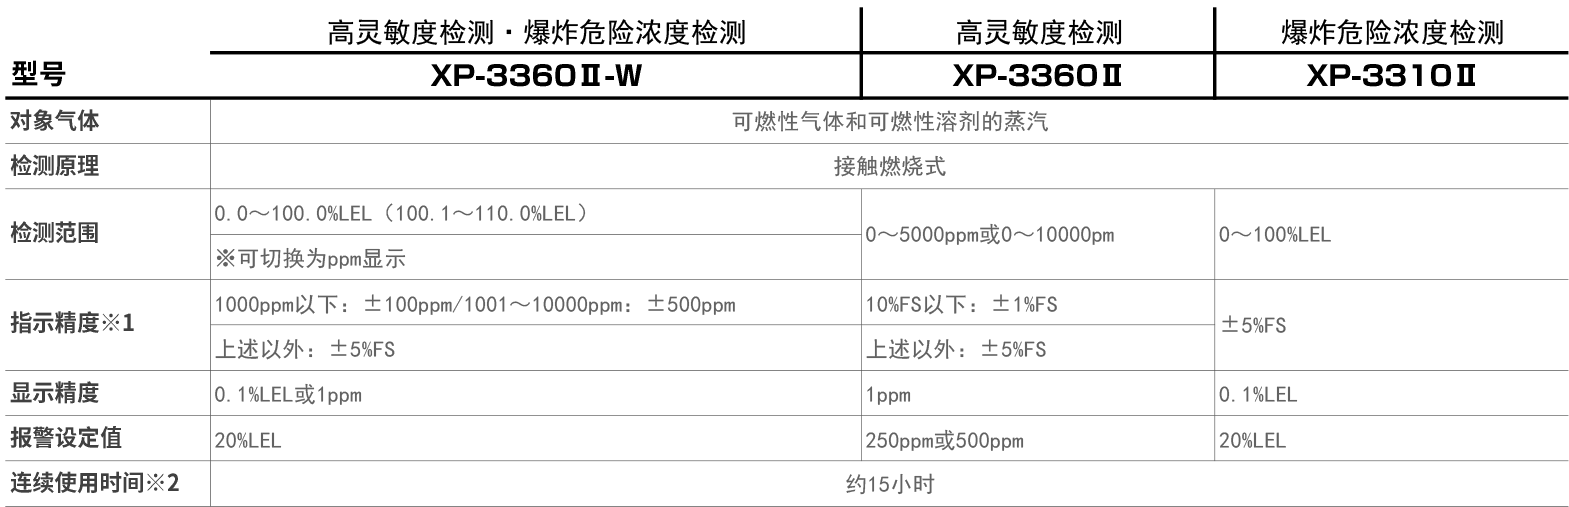 XP-3360Ⅱ-W / XP-3360Ⅱ / XP-3310Ⅱ.png